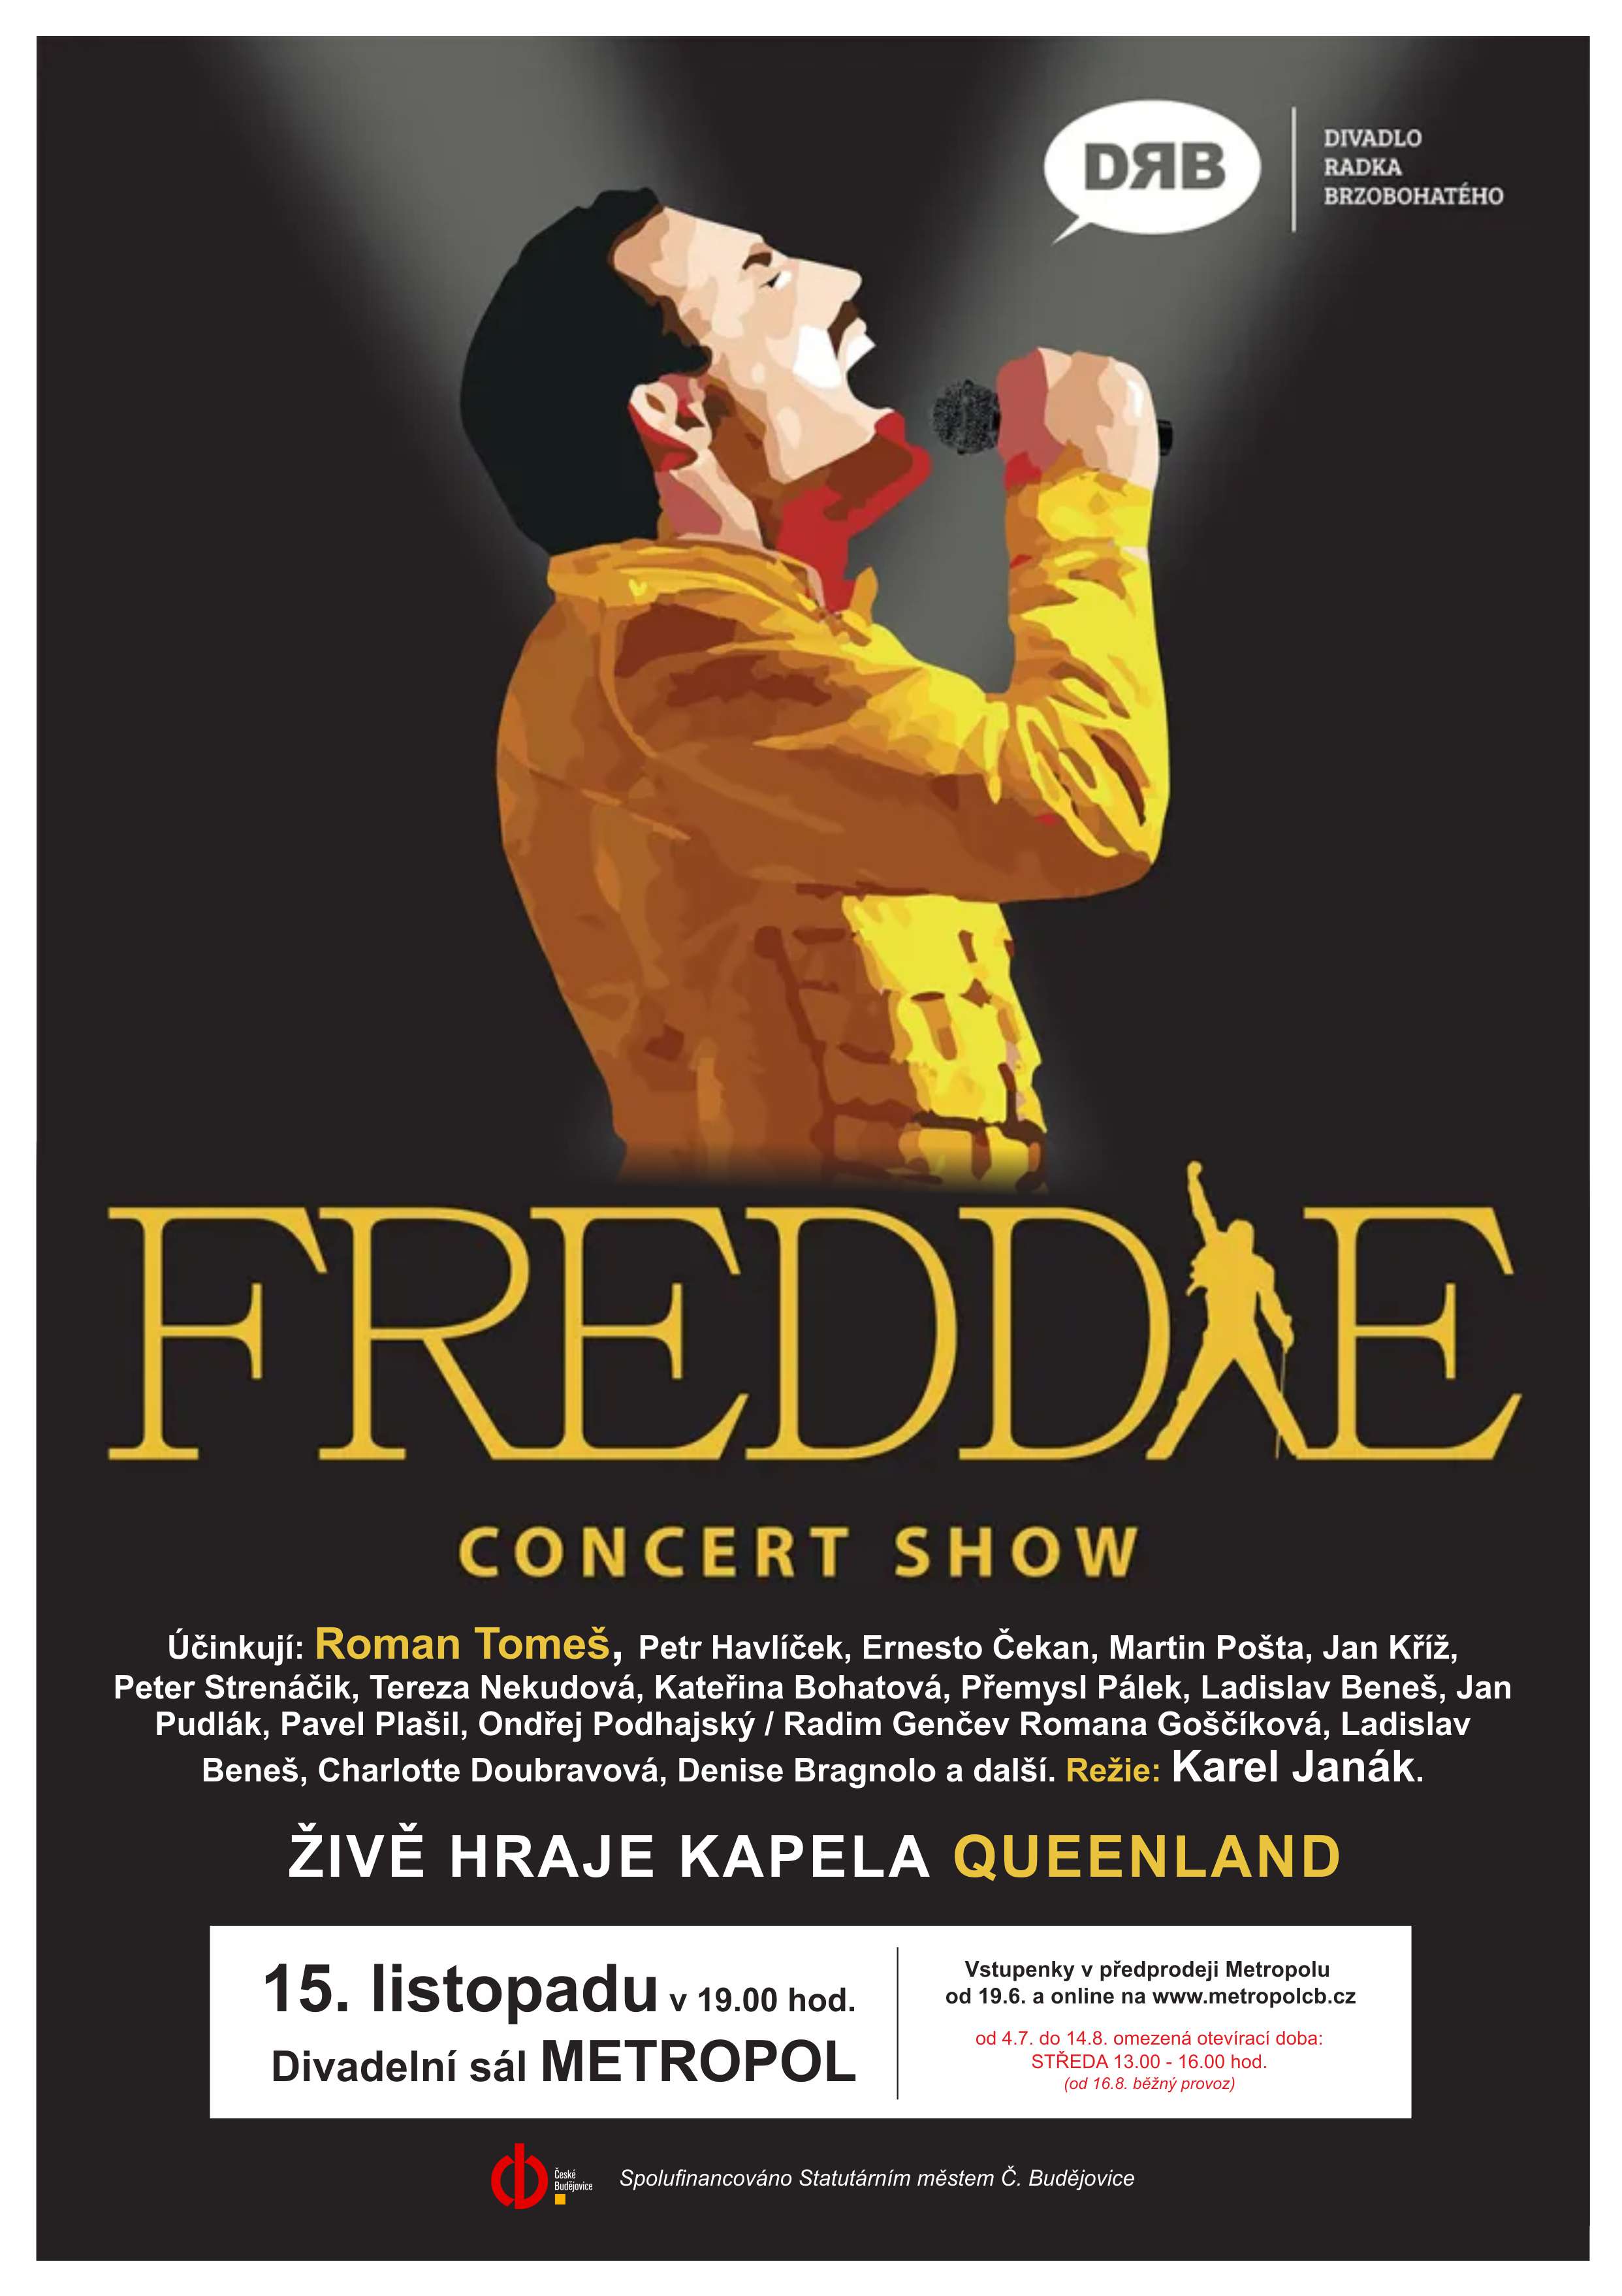 Freddie - Concert show